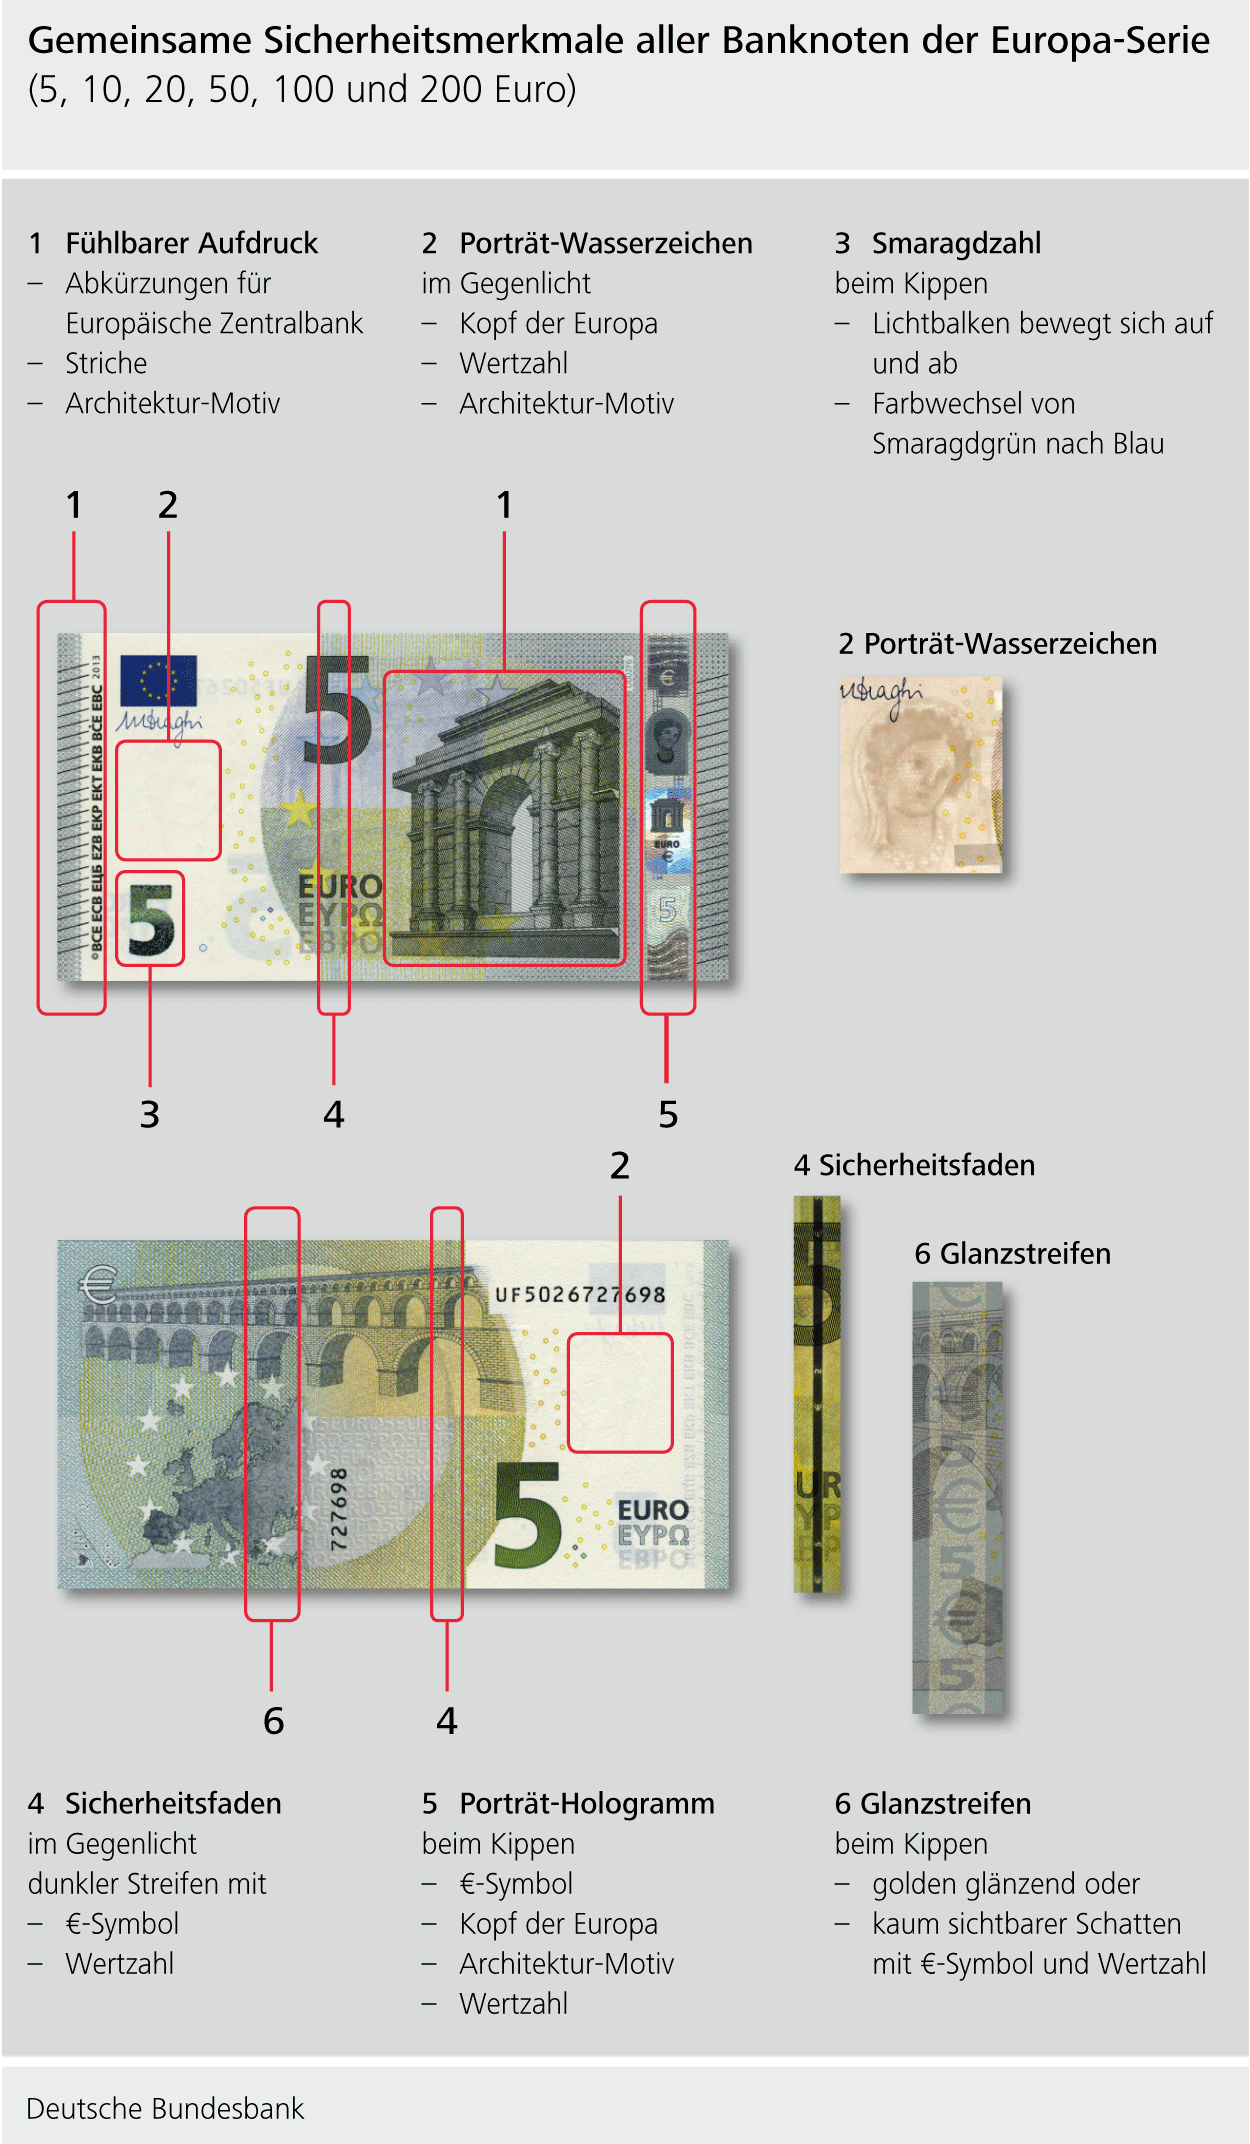 Gemeinsame Sicherheitsmerkmale der aller Banknoten der Europa-Serie